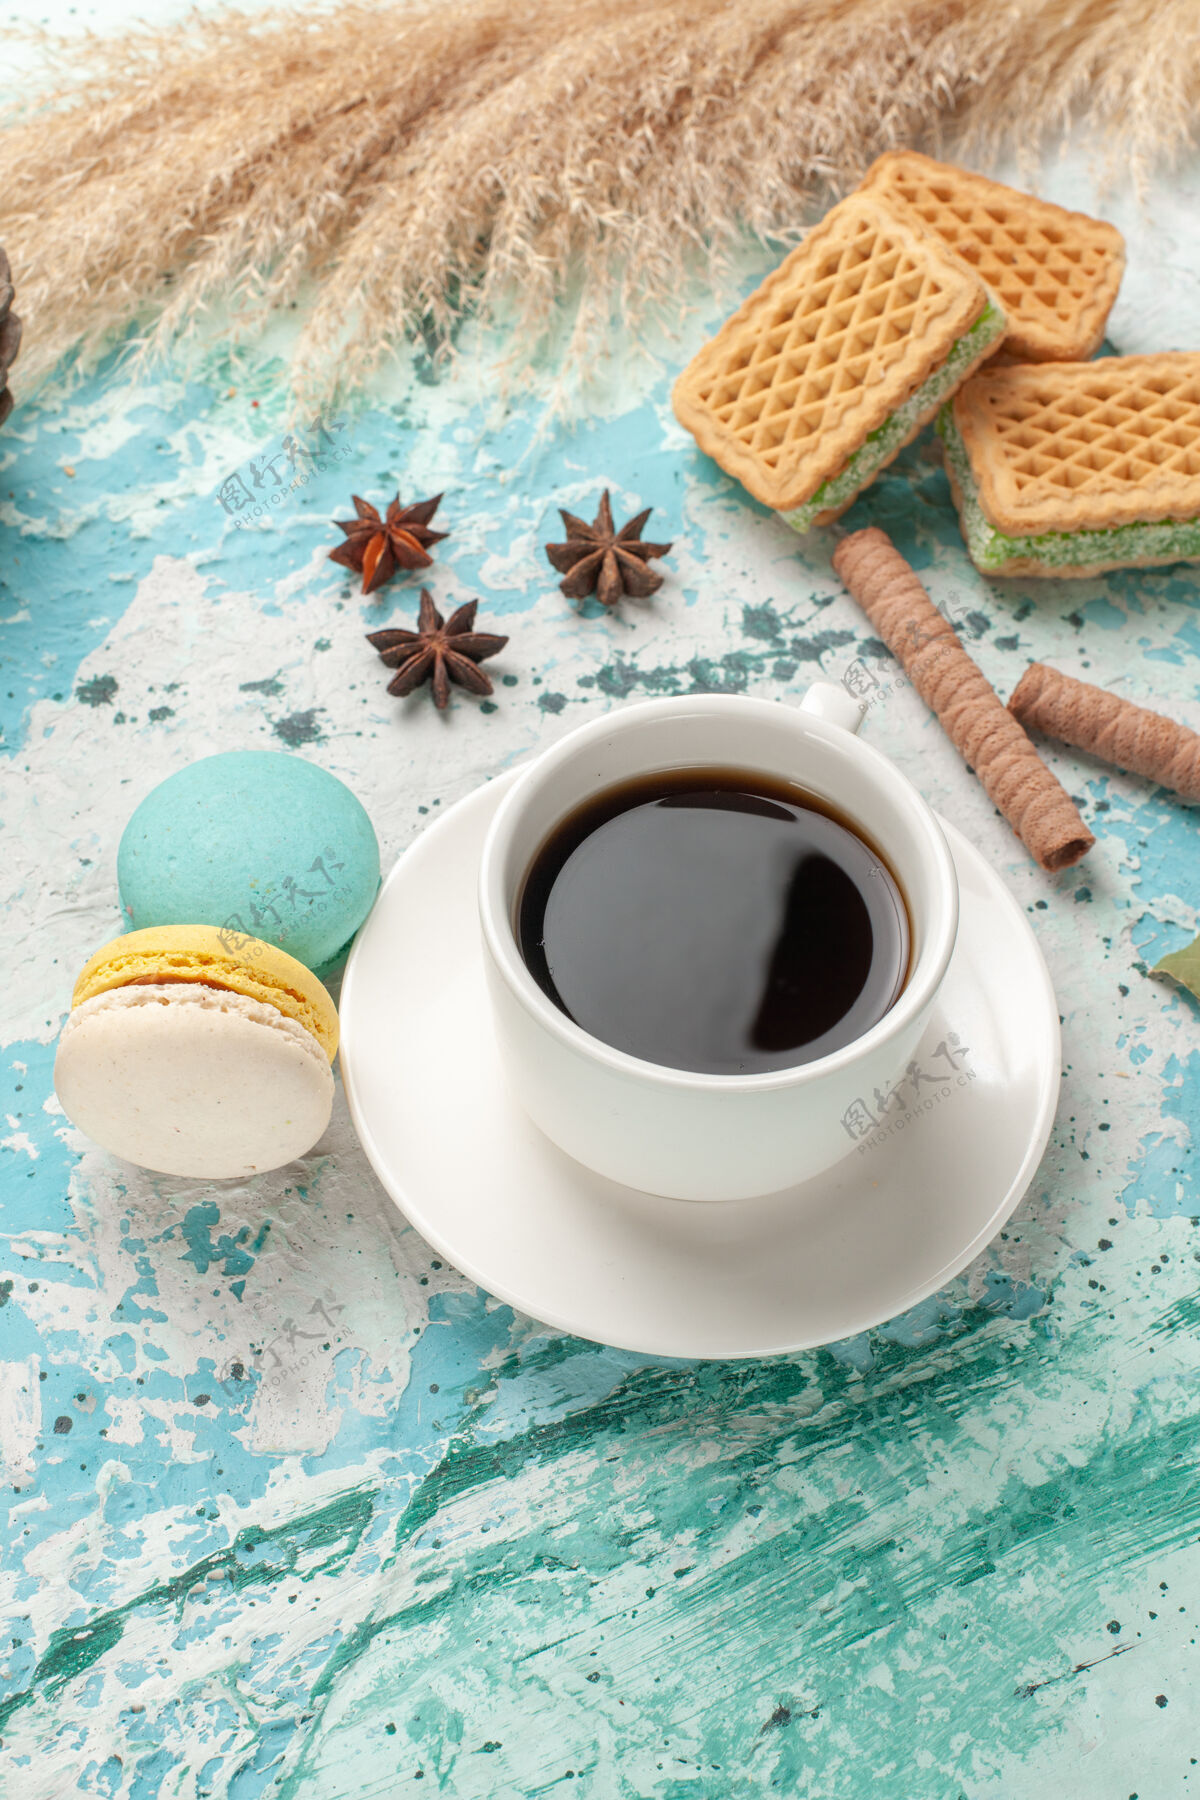 马克杯前视图华夫饼和麦卡龙配一杯茶在蓝色表面蛋糕饼干糖甜饼干视野咖啡咖啡因